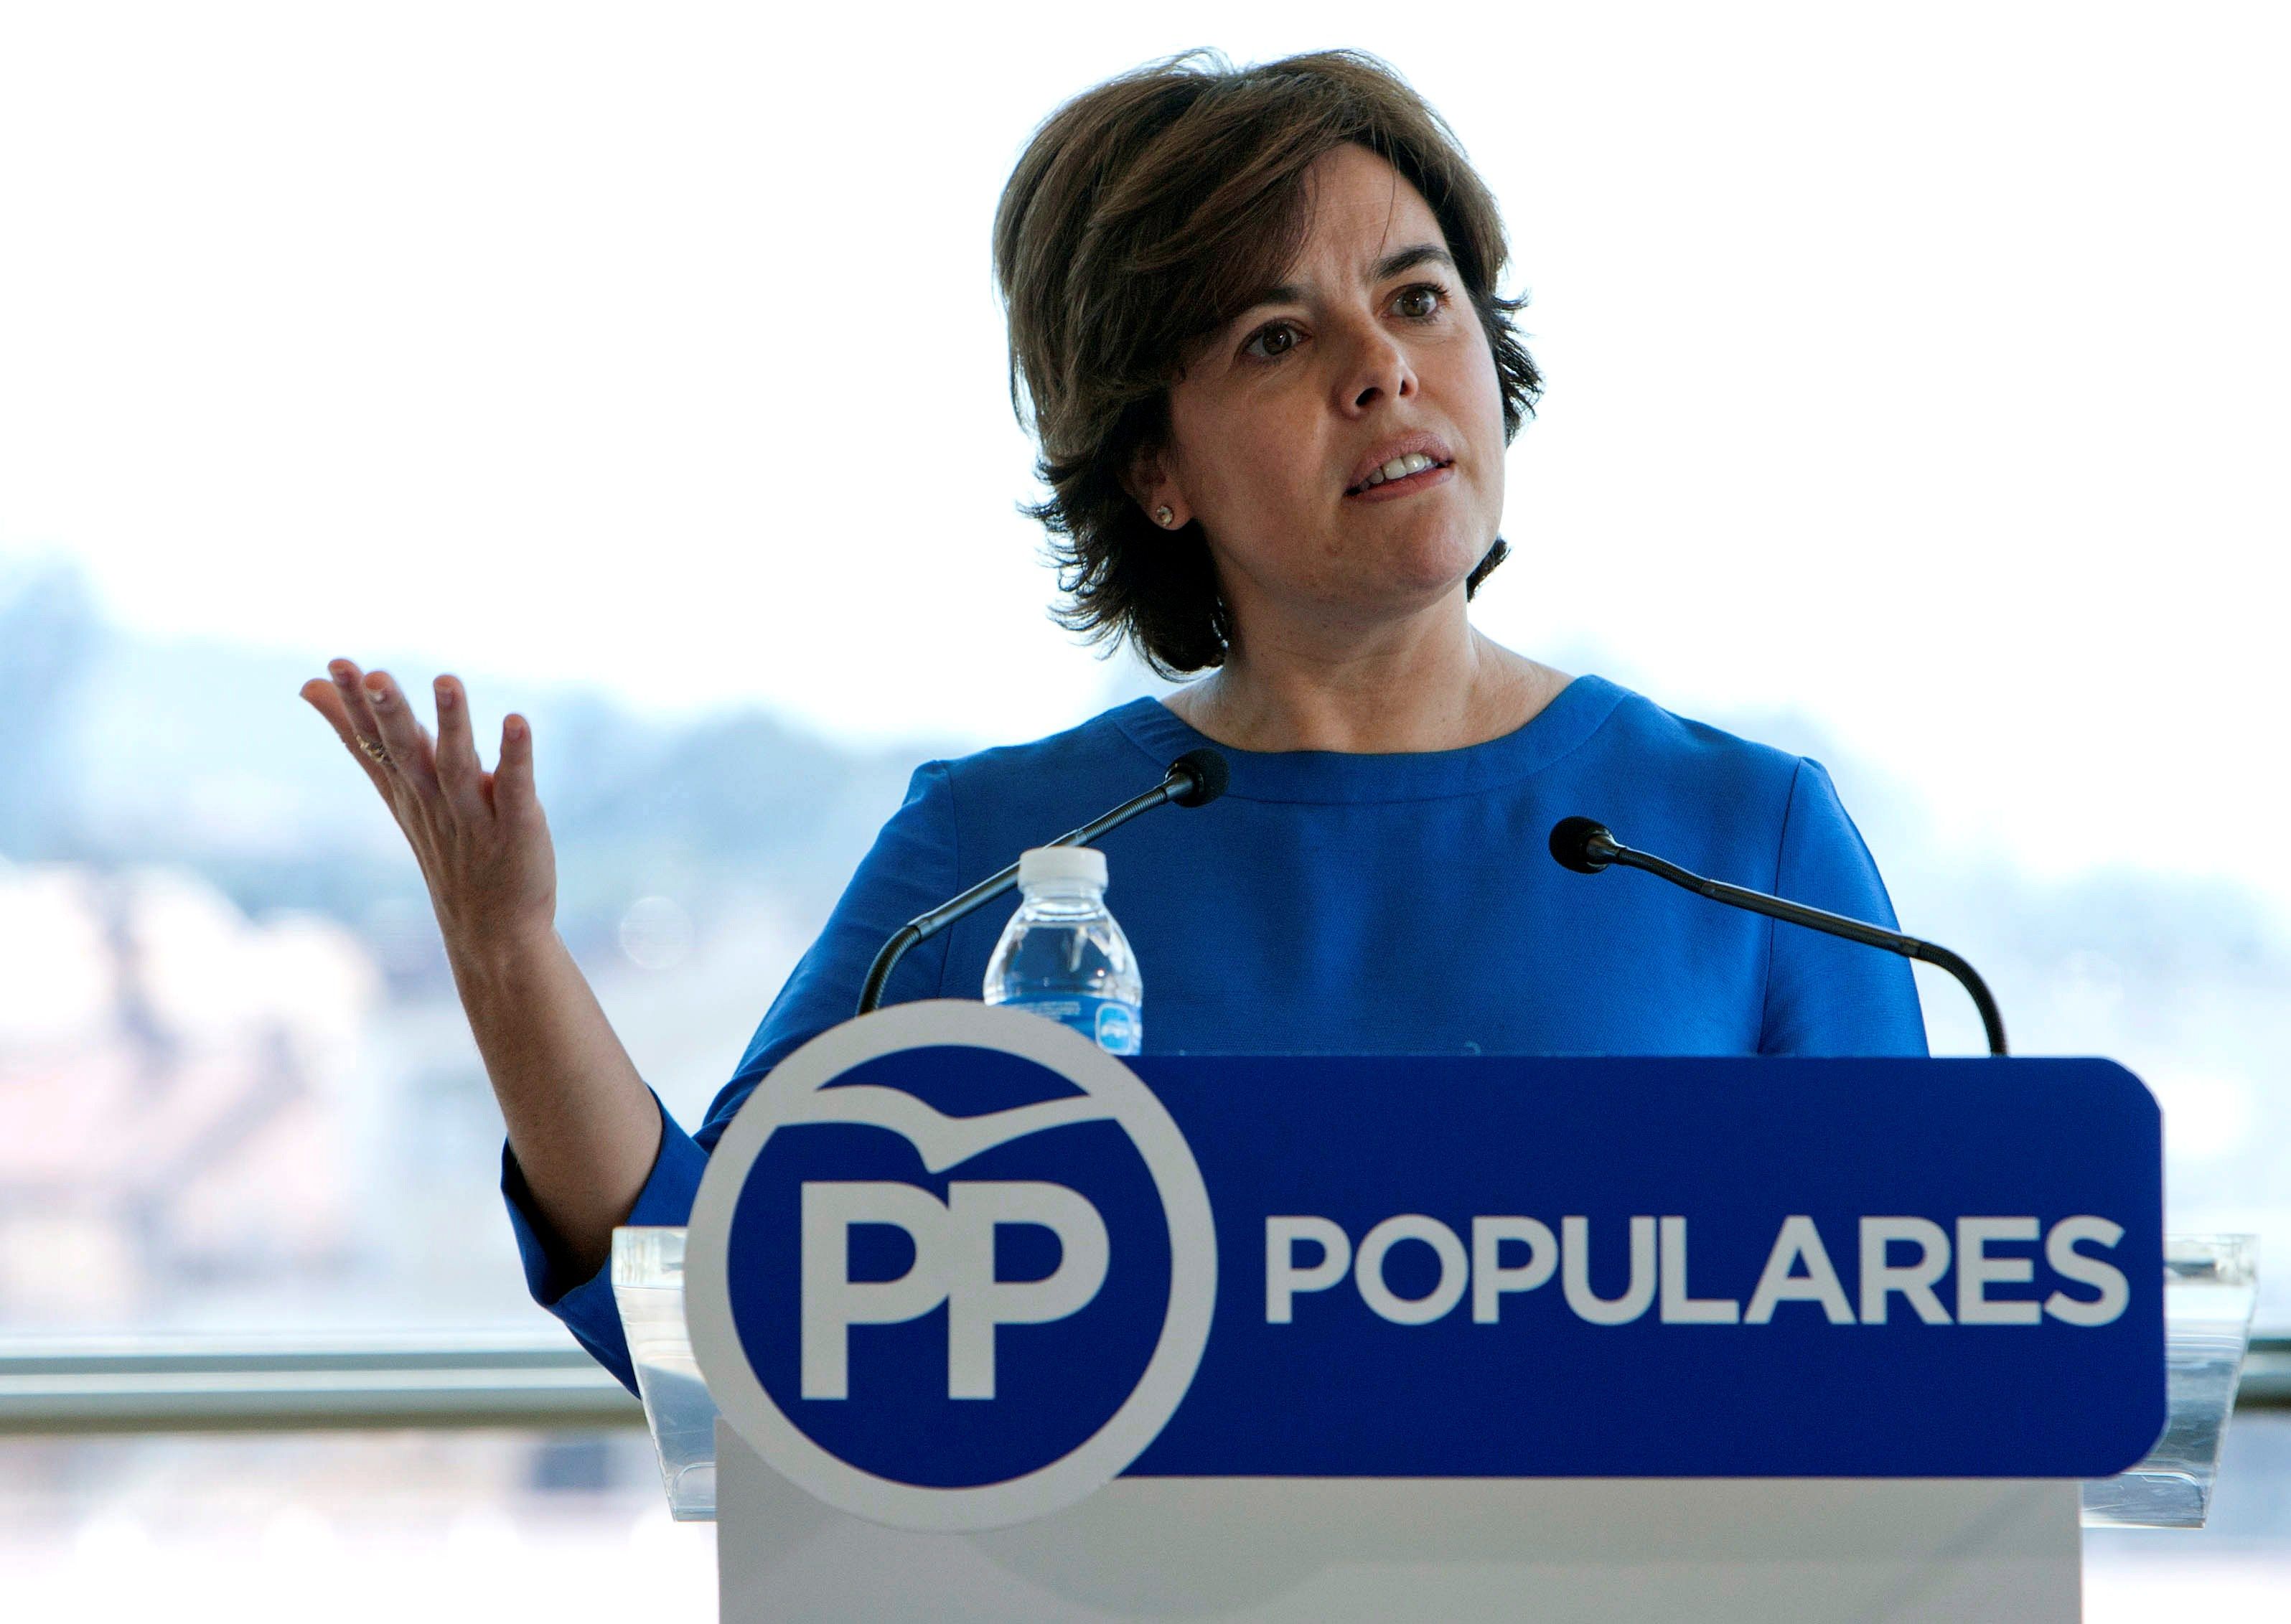 La candidata a la Presidencia del PP Soraya Sáenz de Santamaría durante su intervención en un acto con afiliados hoy en Pontevedra. EFE